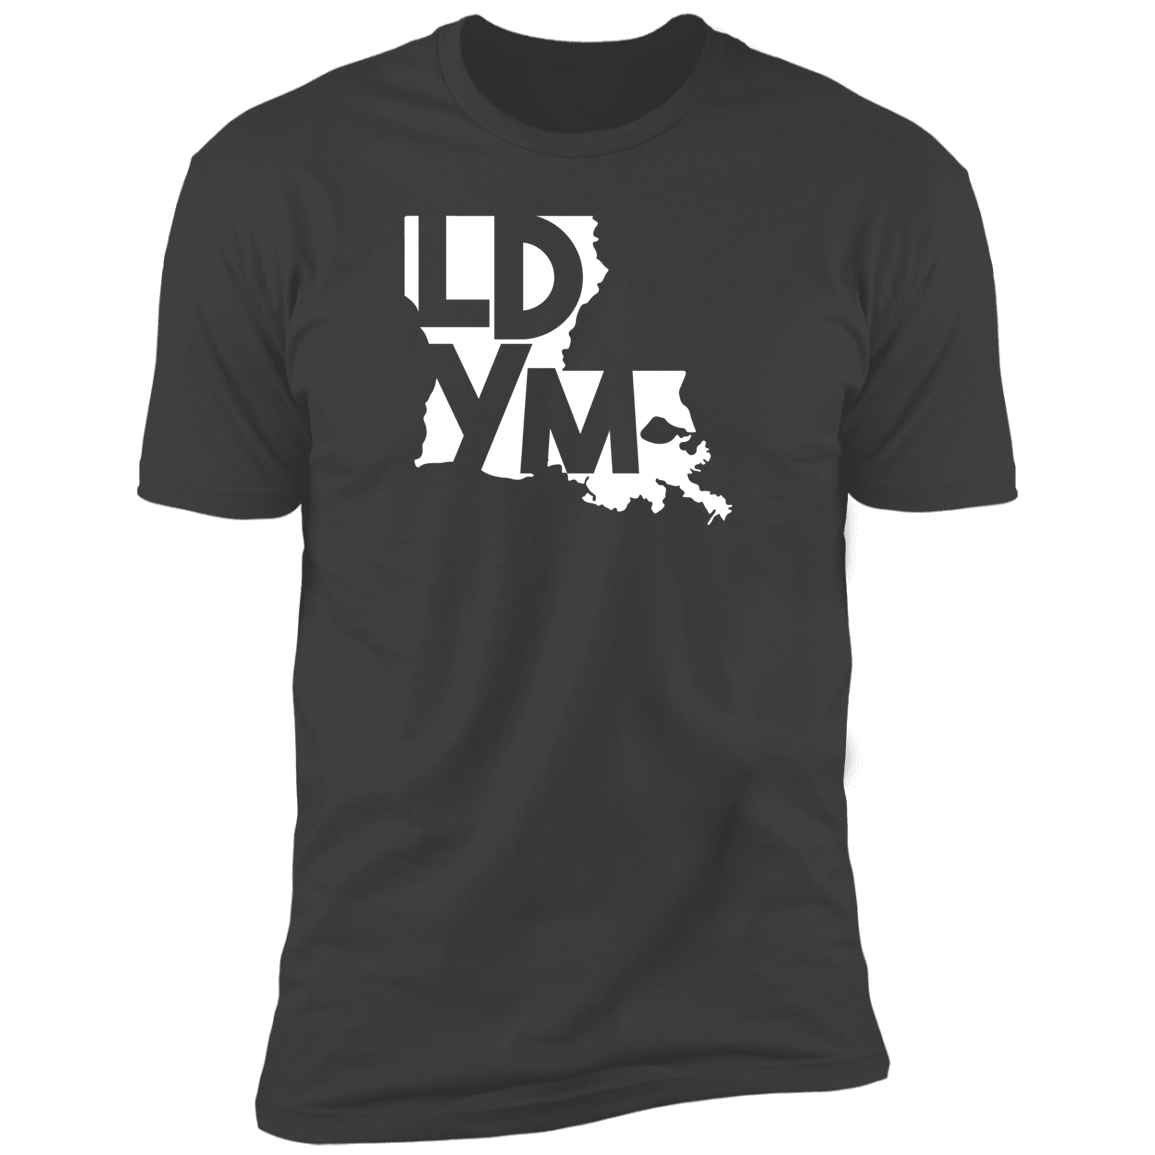 LDYM - Tshirts - Long Sleeve & Short Sleeve